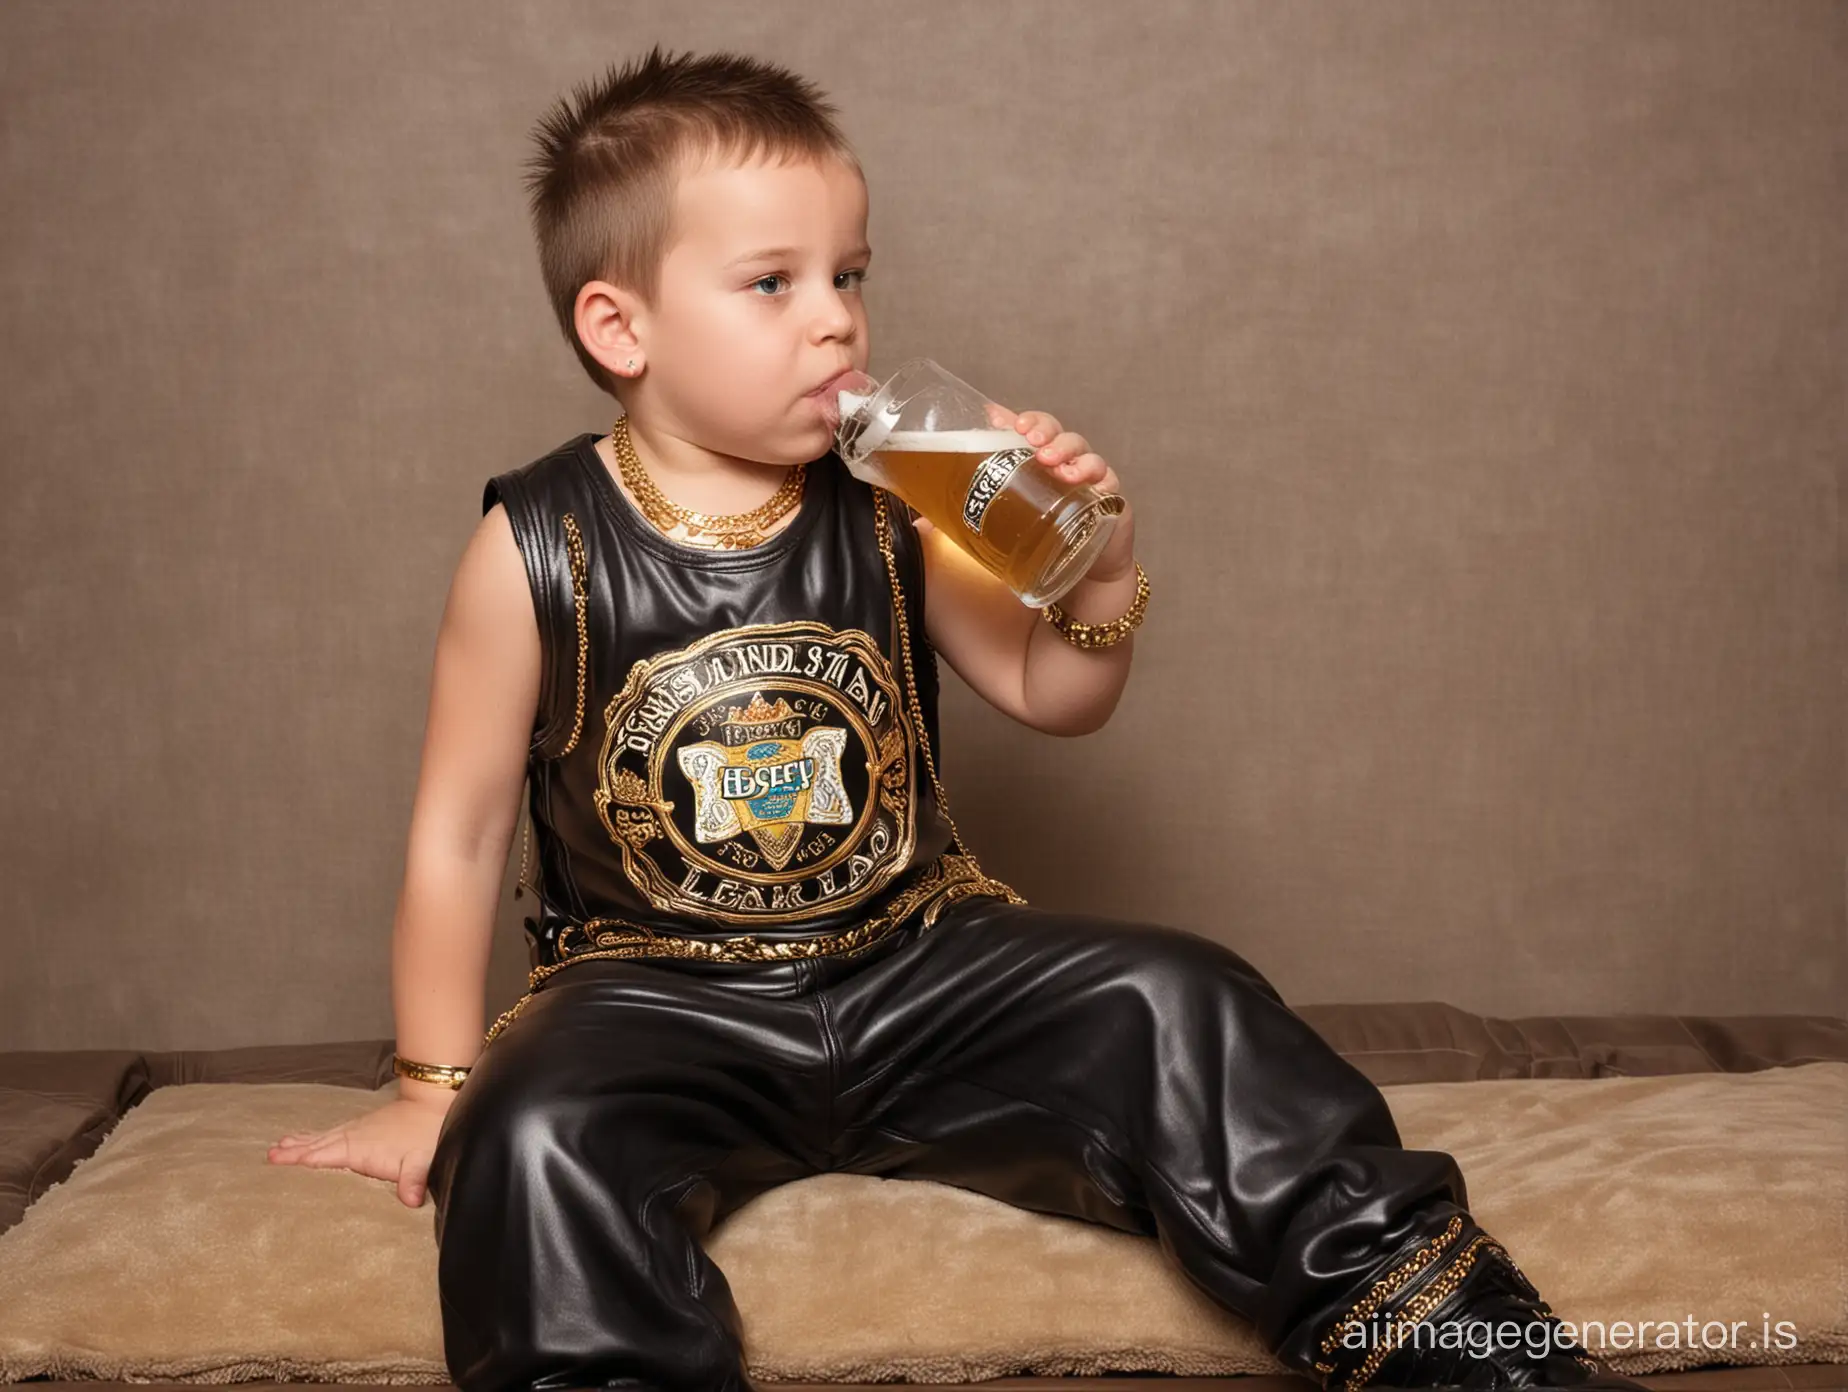 Young-Boy-in-Urban-Streetwear-Enjoying-a-Beverage